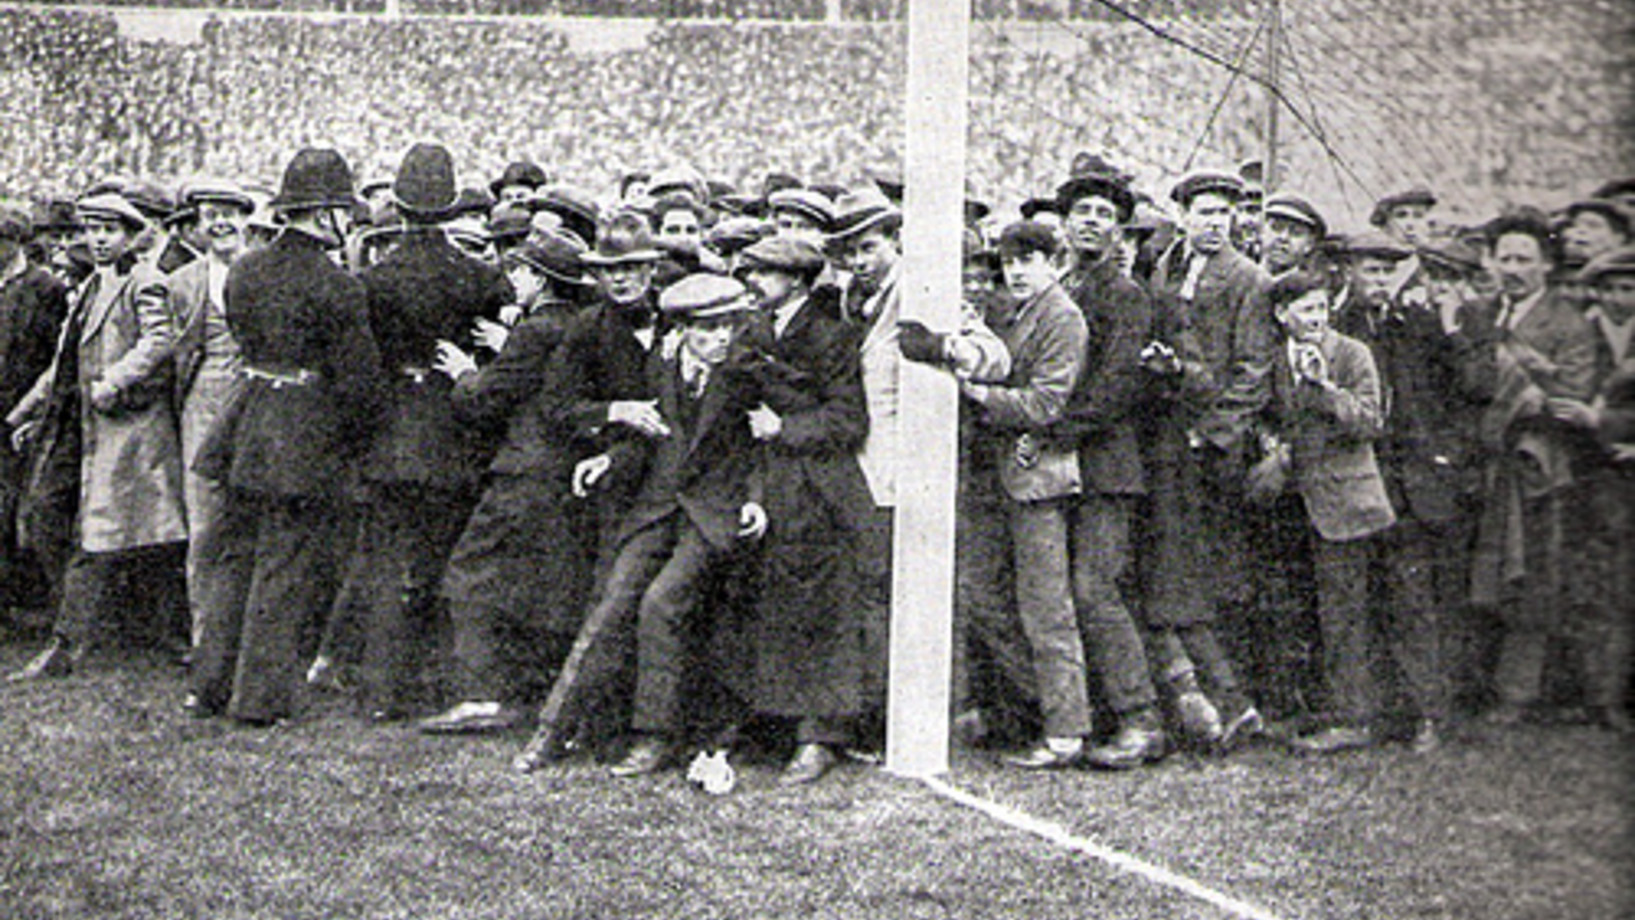 200'000 Briten drängen sich am 28. April 1923 ins neu eröffnete Londoner Wembley Stadion. Tausende strömen auf den Rasen. Eigentlich wollten Bolton und Westham ihren Cup-Final austragen. Doch an Fussball war zunächst nicht zu denken. (Bild: Aus dem Foto-Archiv der Agentur Keystone)